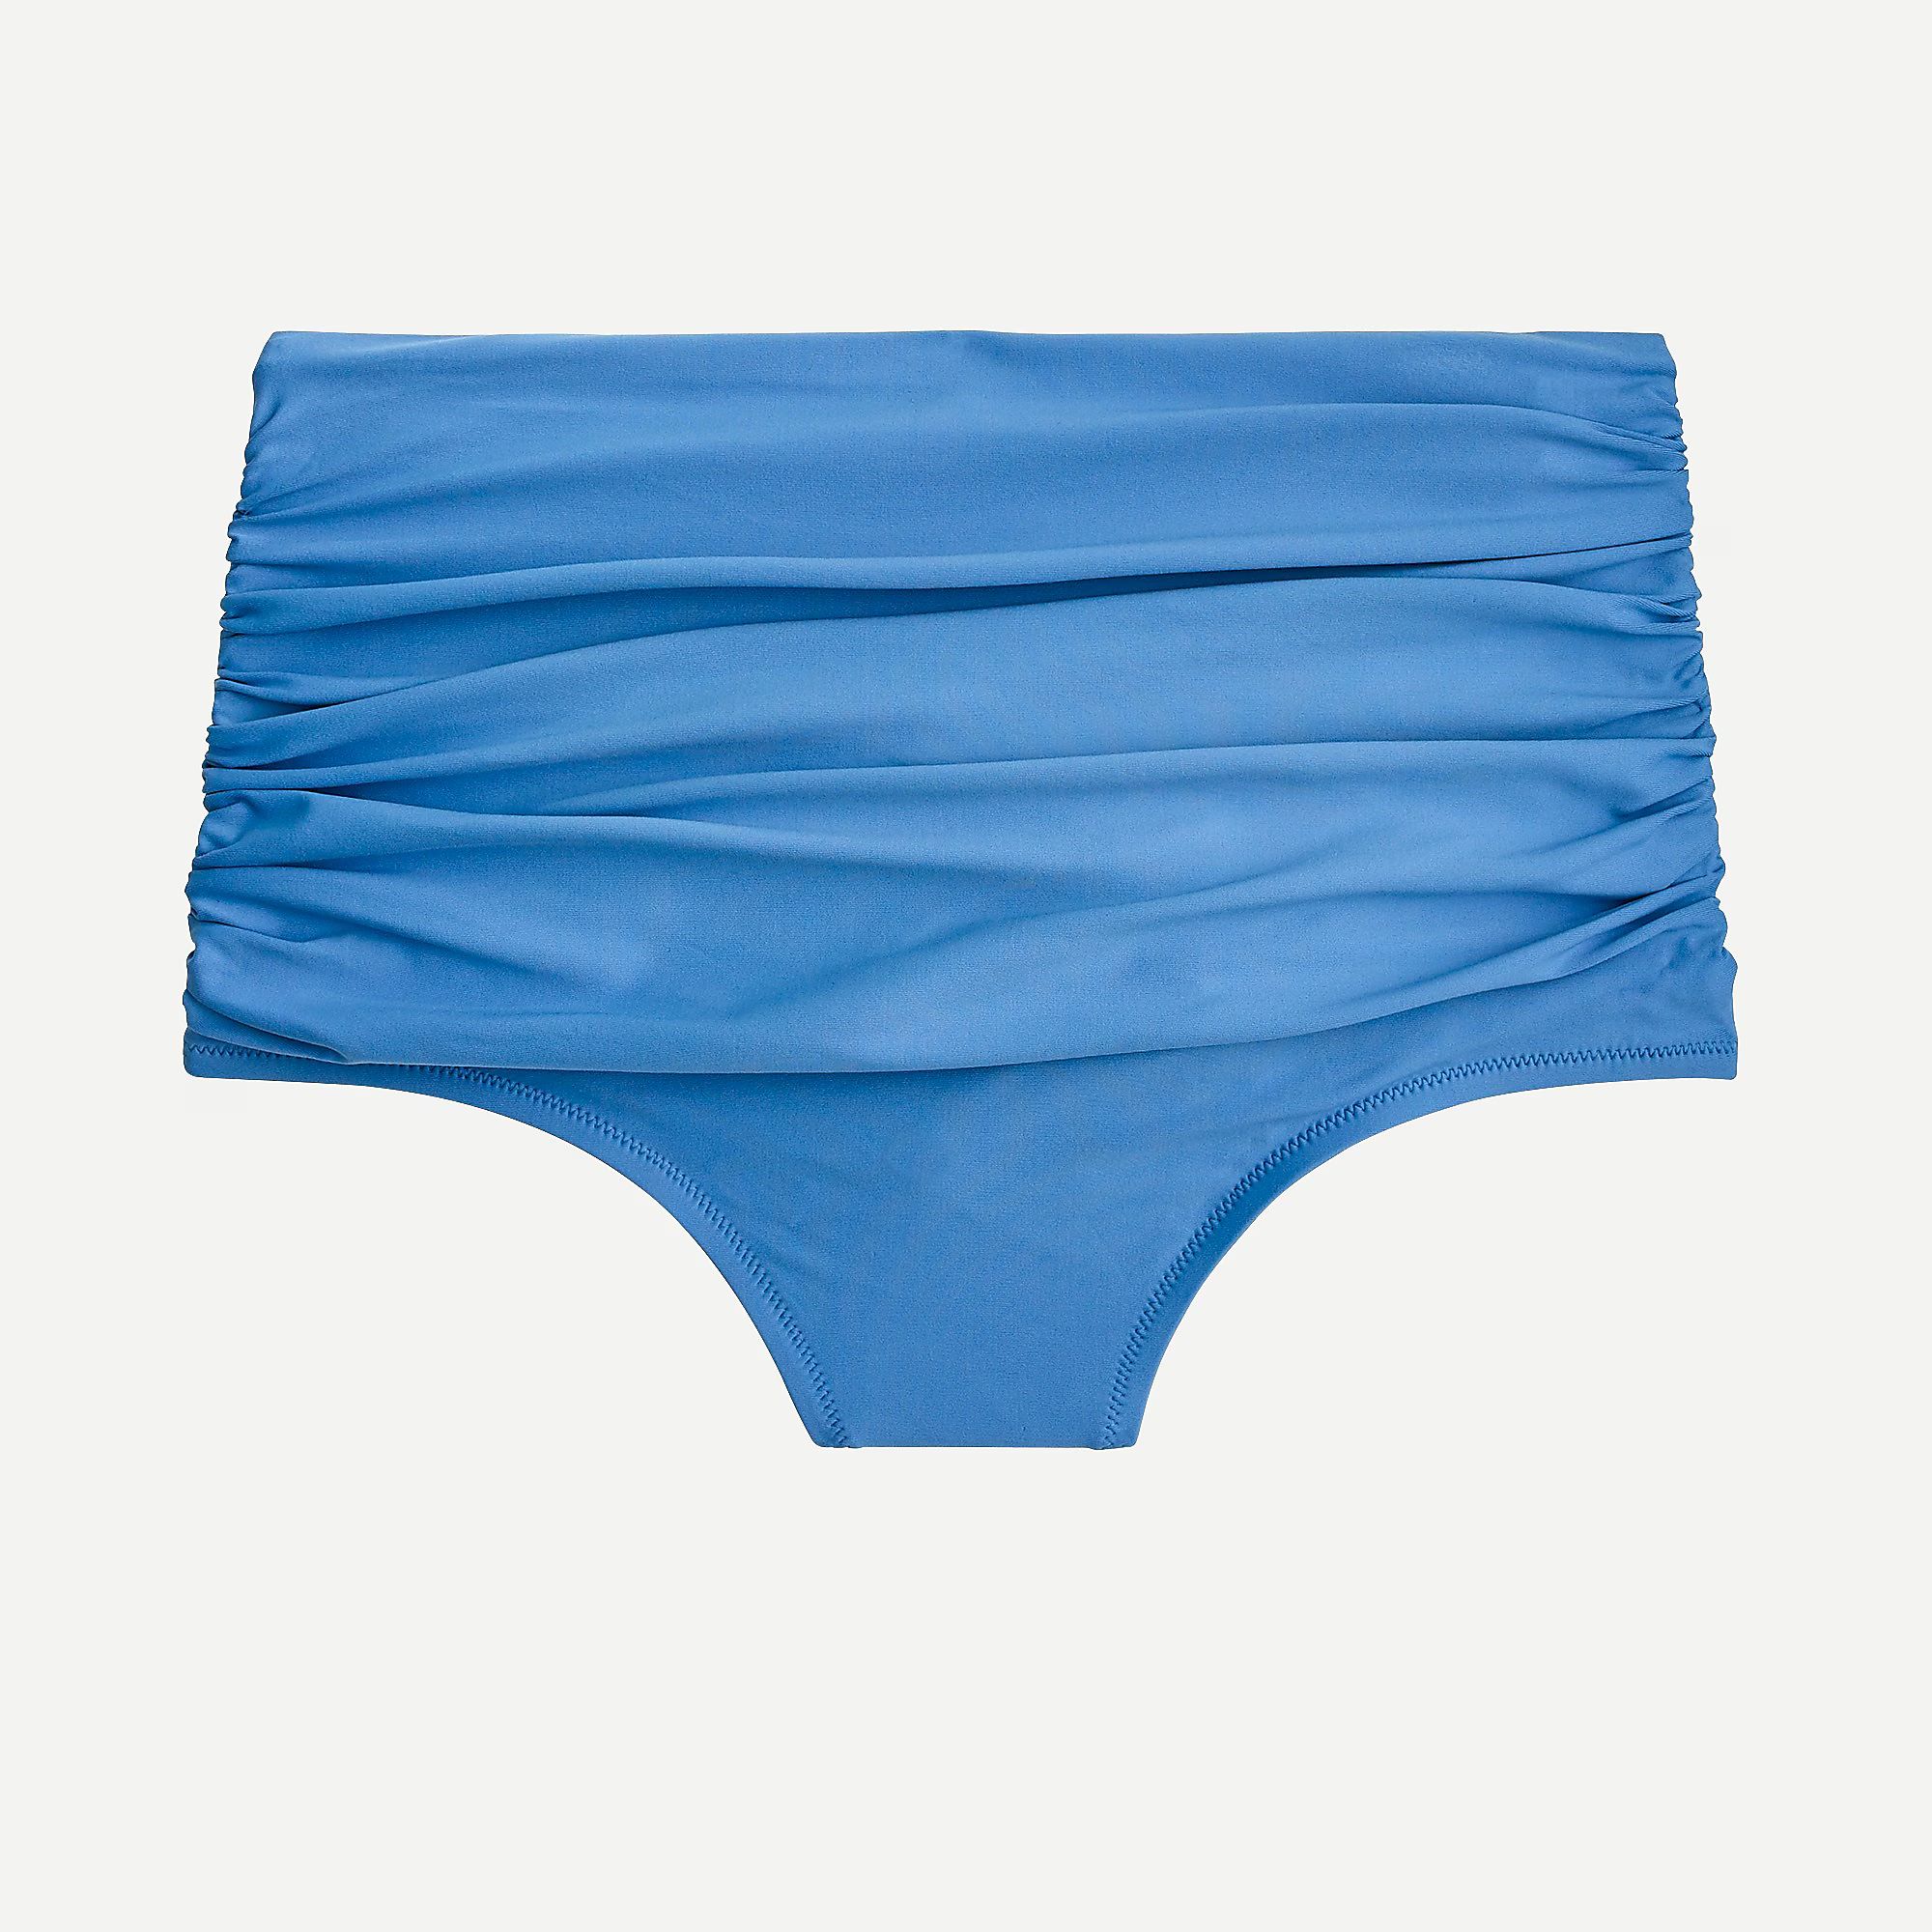 High-waisted ruched bikini bottom | J.Crew US